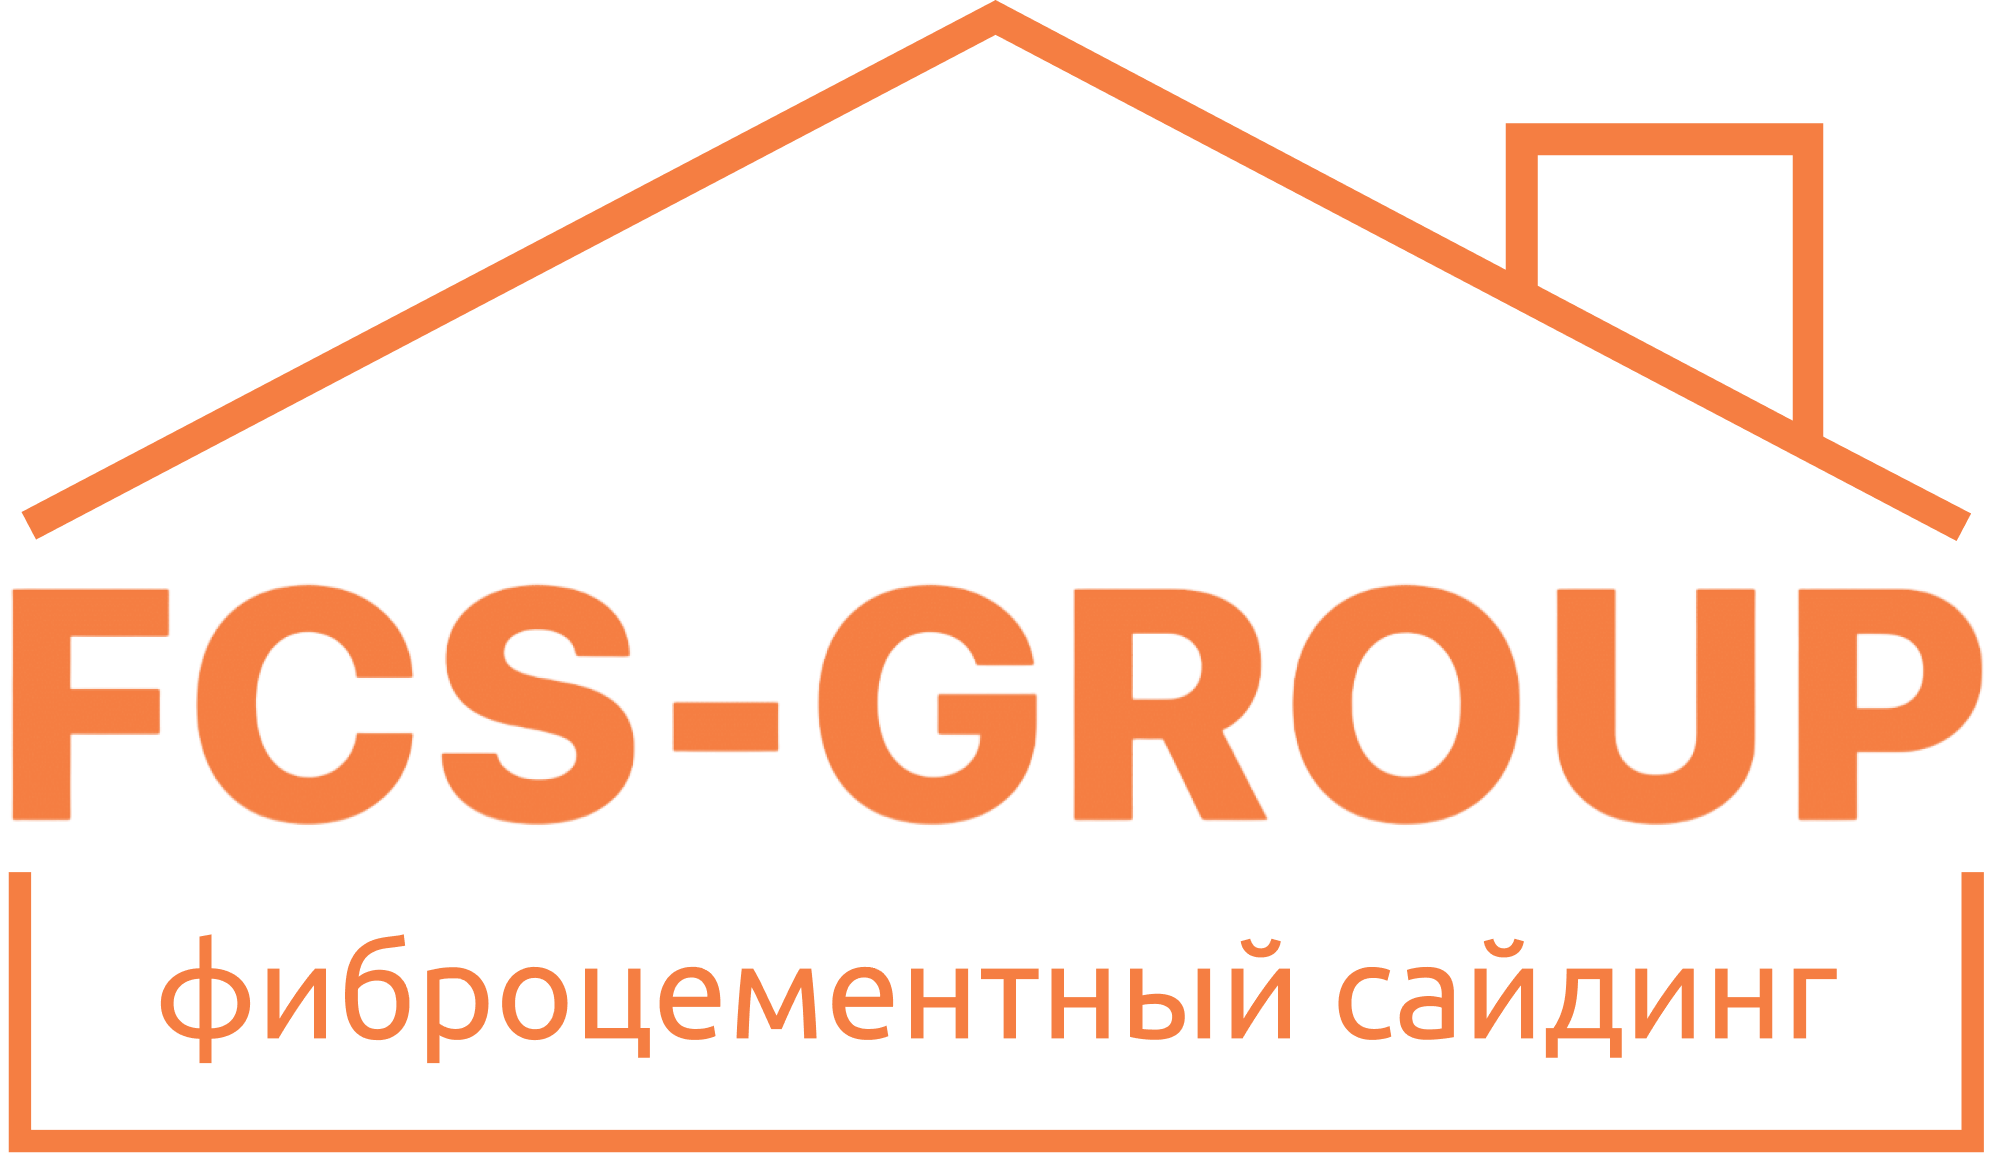 Фиброцементный сайдинг FCS Group купить в СПб